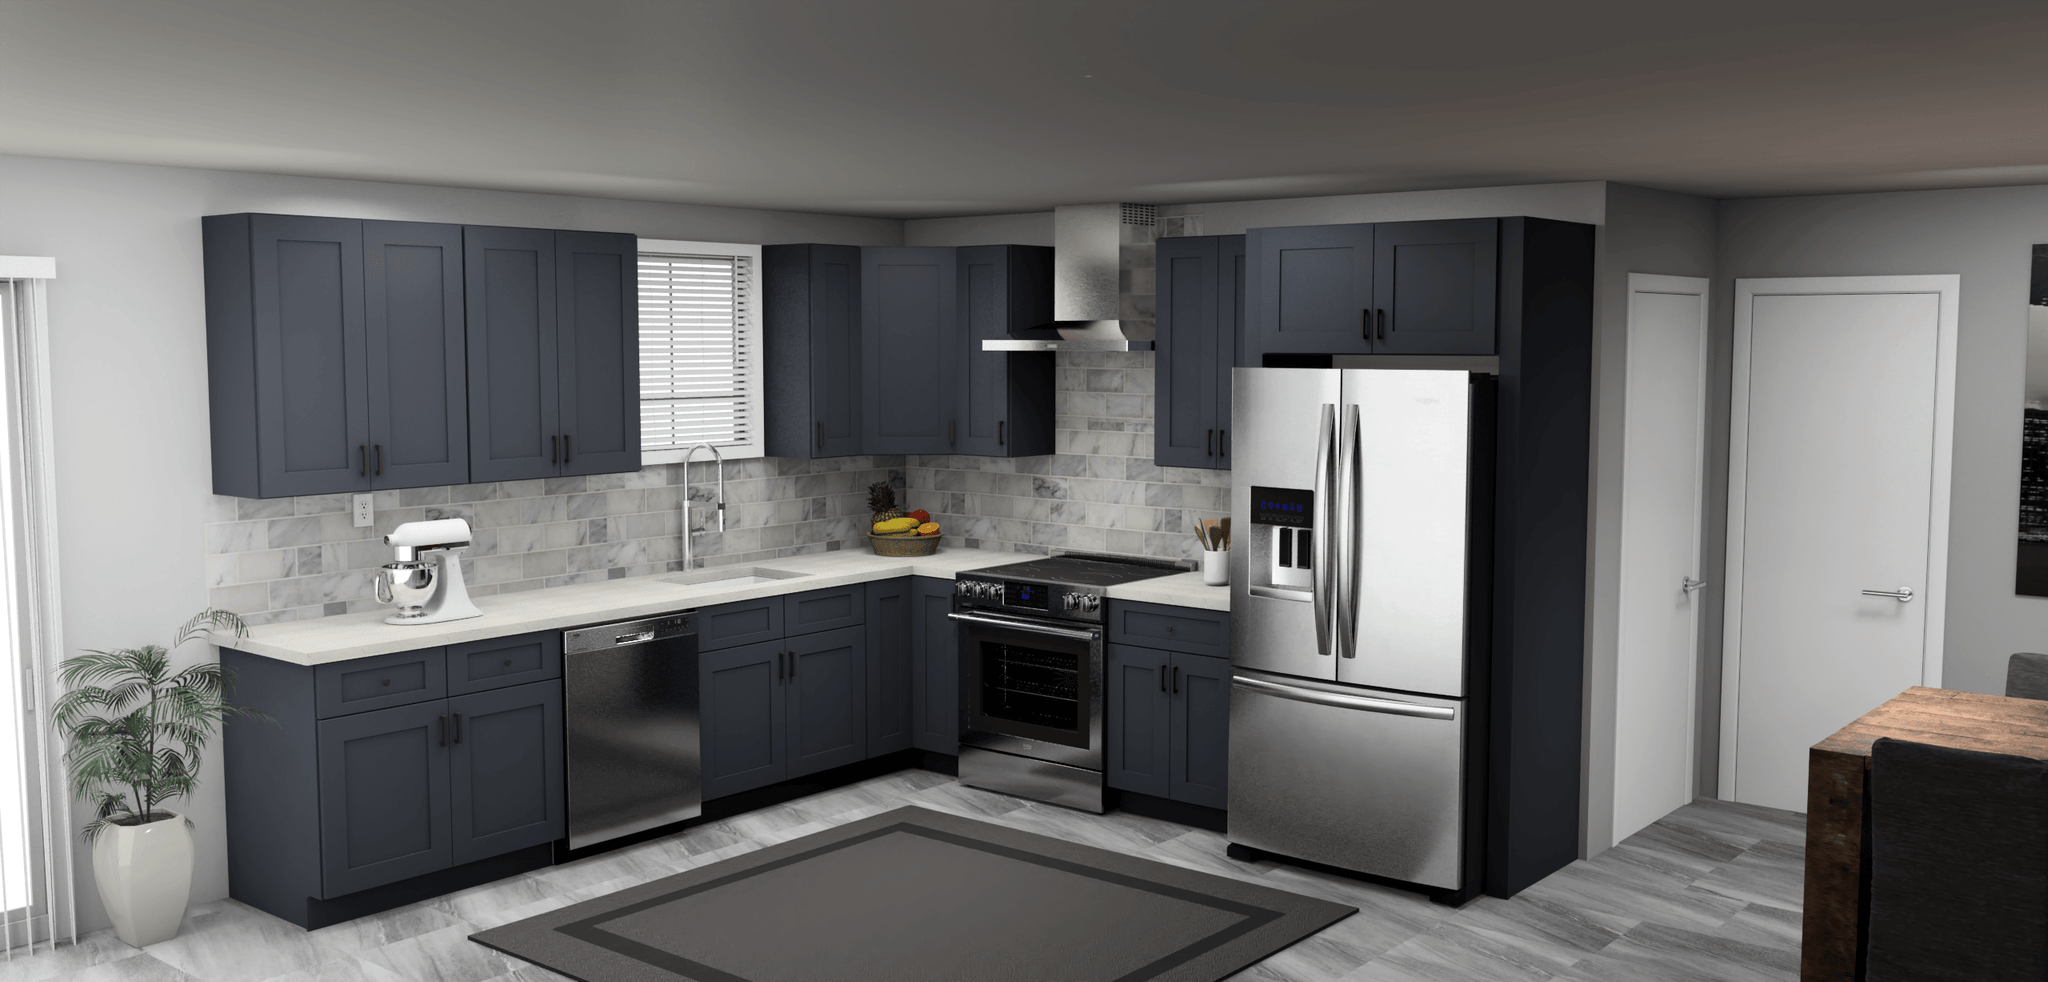 Fabuwood Allure Galaxy Indigo 11 x 11 L Shaped Kitchen Main Layout Photo